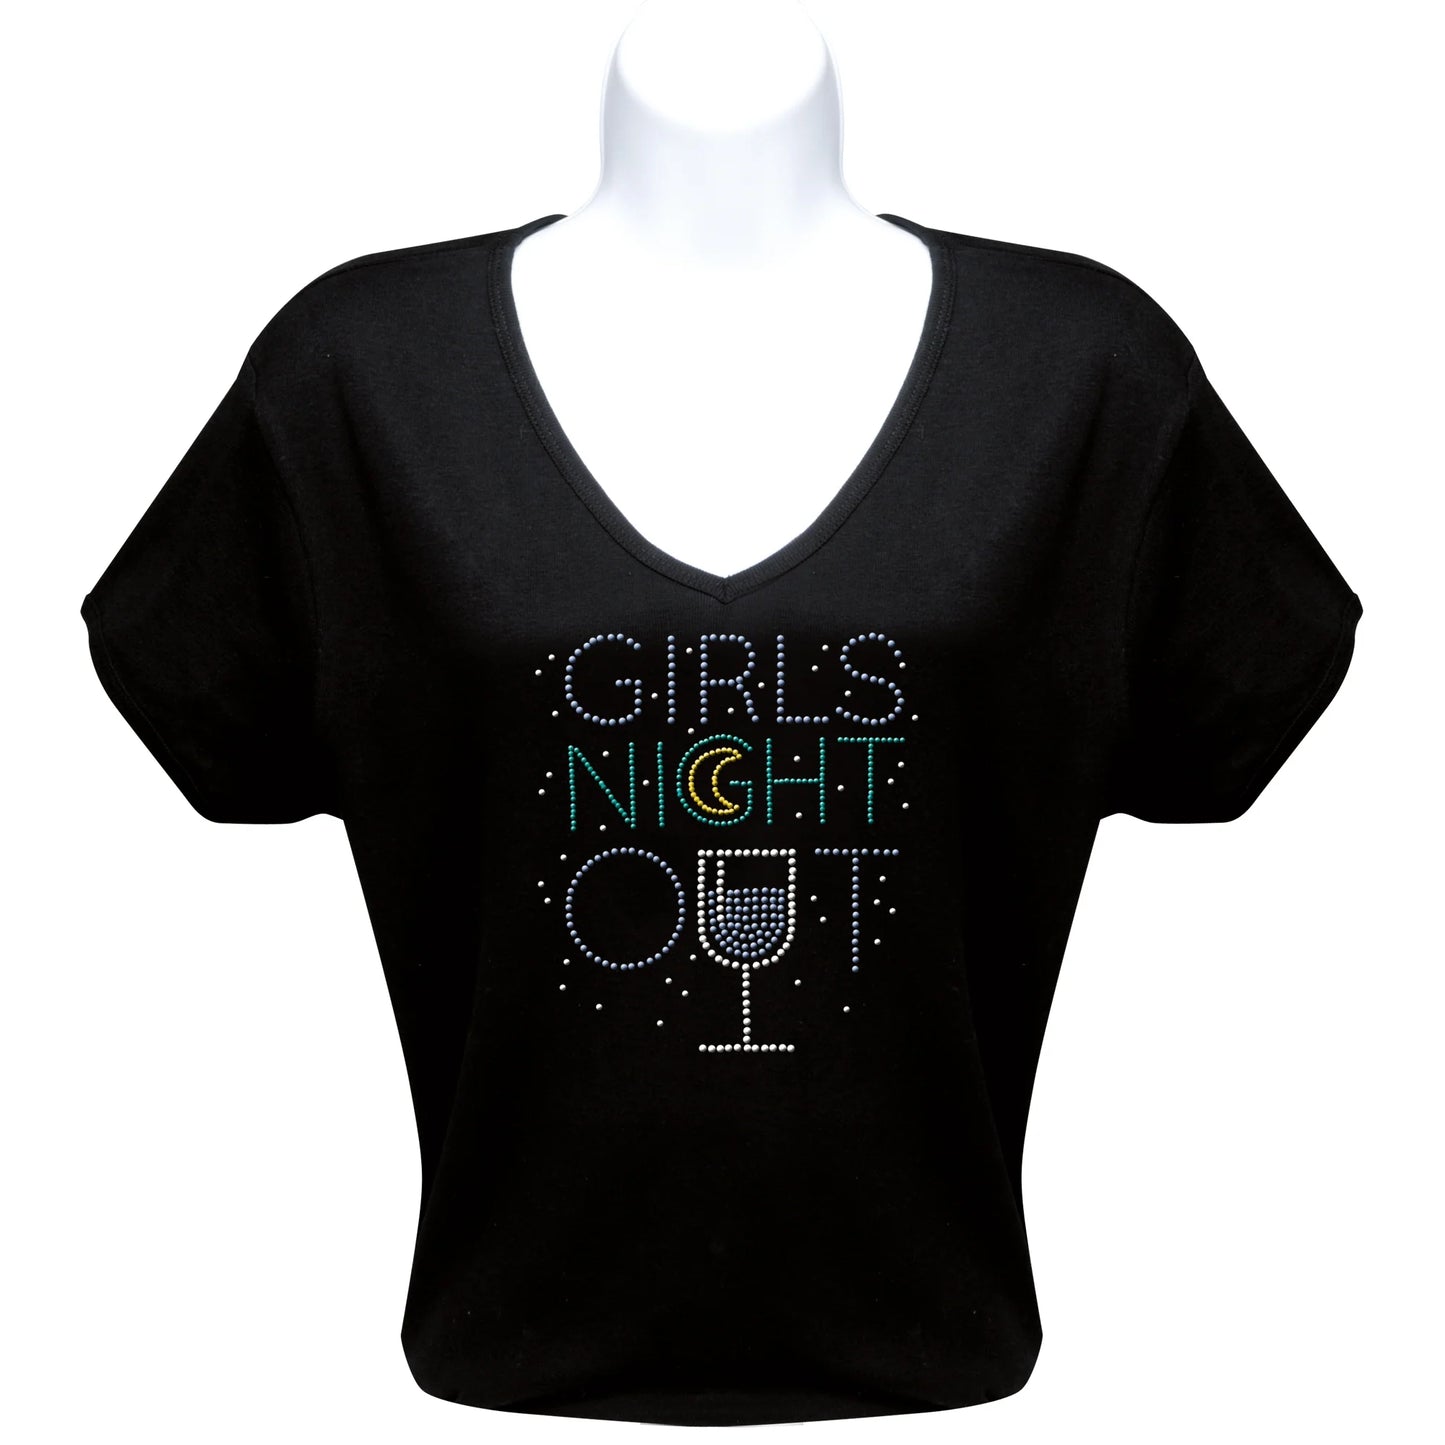 Rhinestone T-Shirt - Girls Night Out